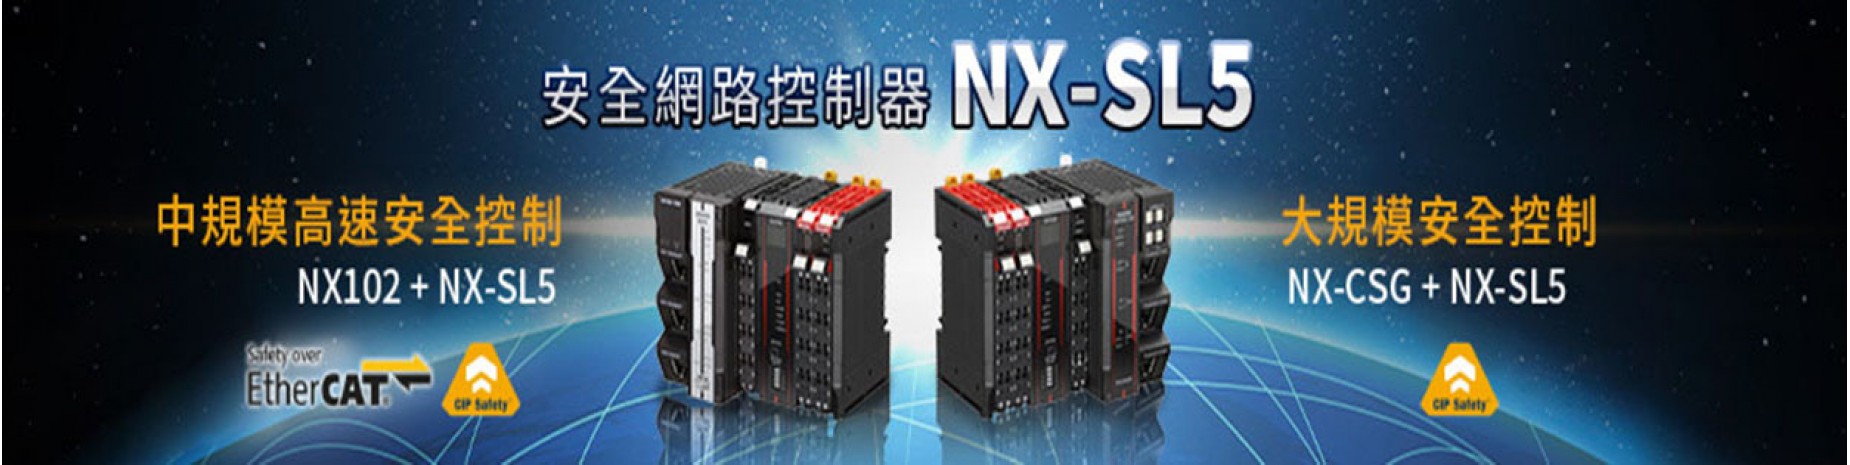 NX-SL5